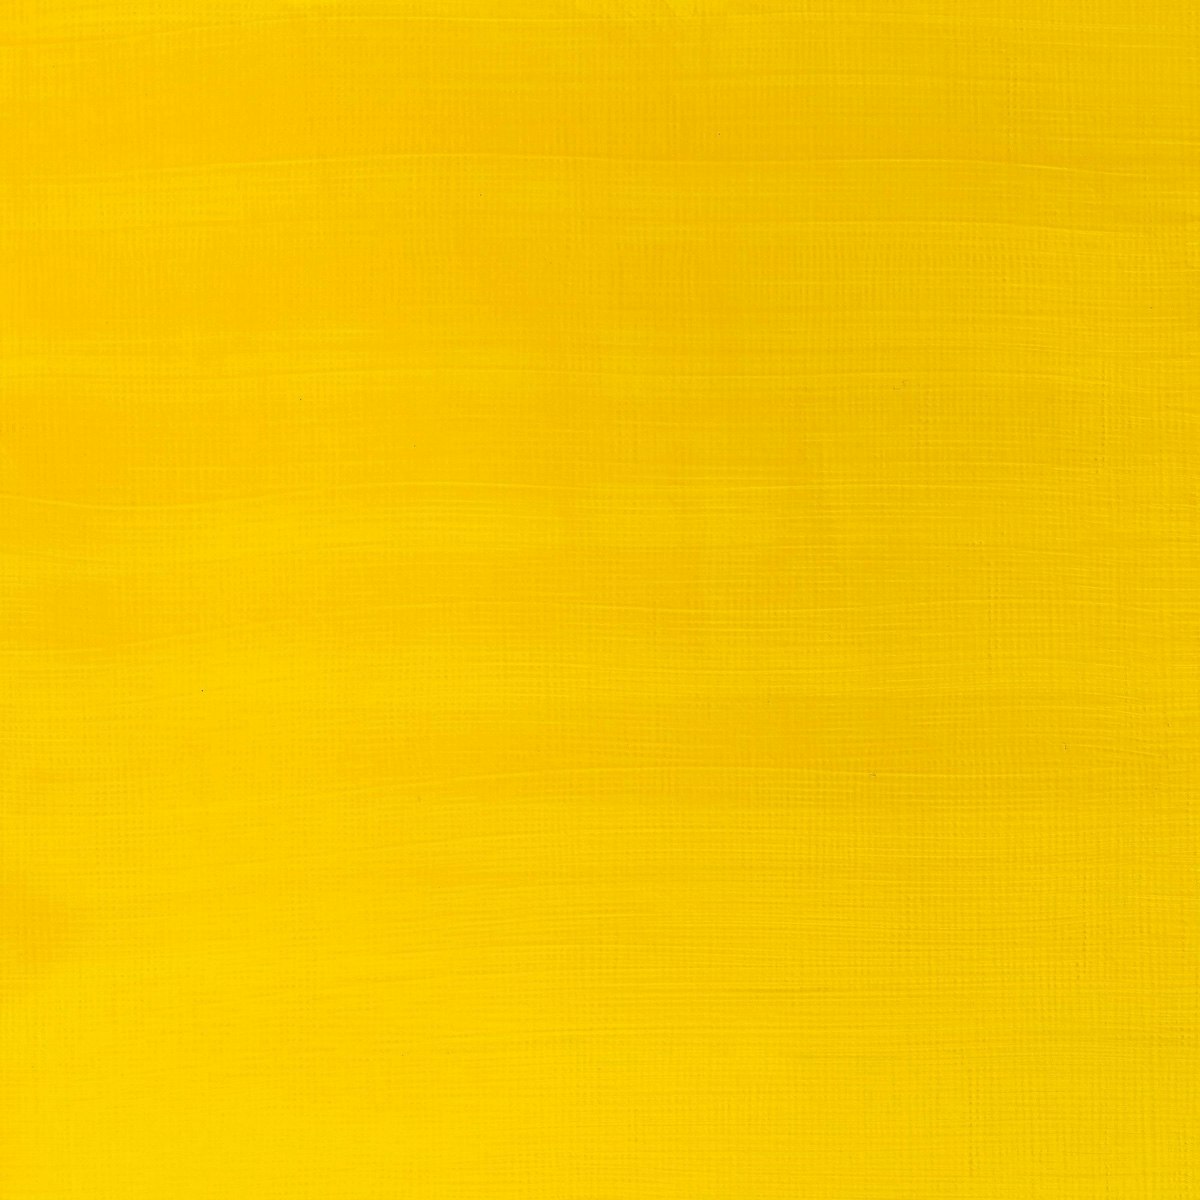 Galeria-500ml-120-Cadmium yellow medium Hue